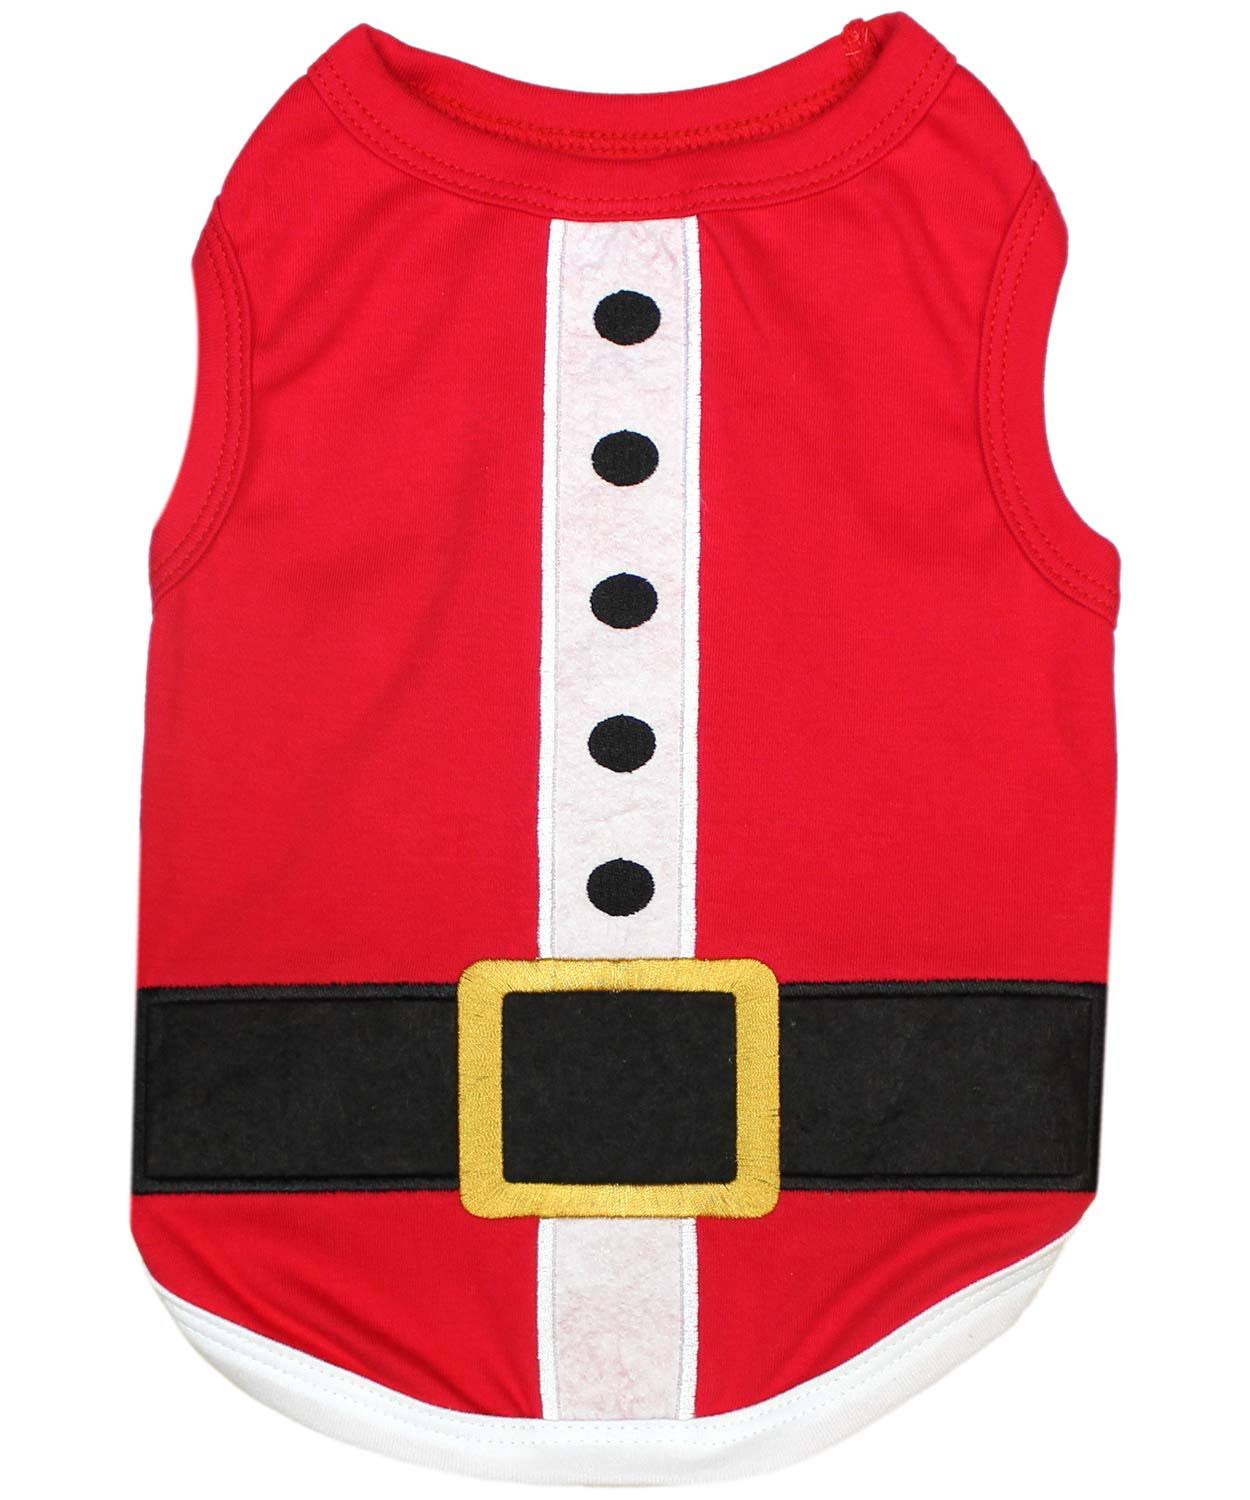 Parisian Pet Holiday Xmas Dog Clothes Santa's Outfit T-Shirt, Size: 2XL, Red